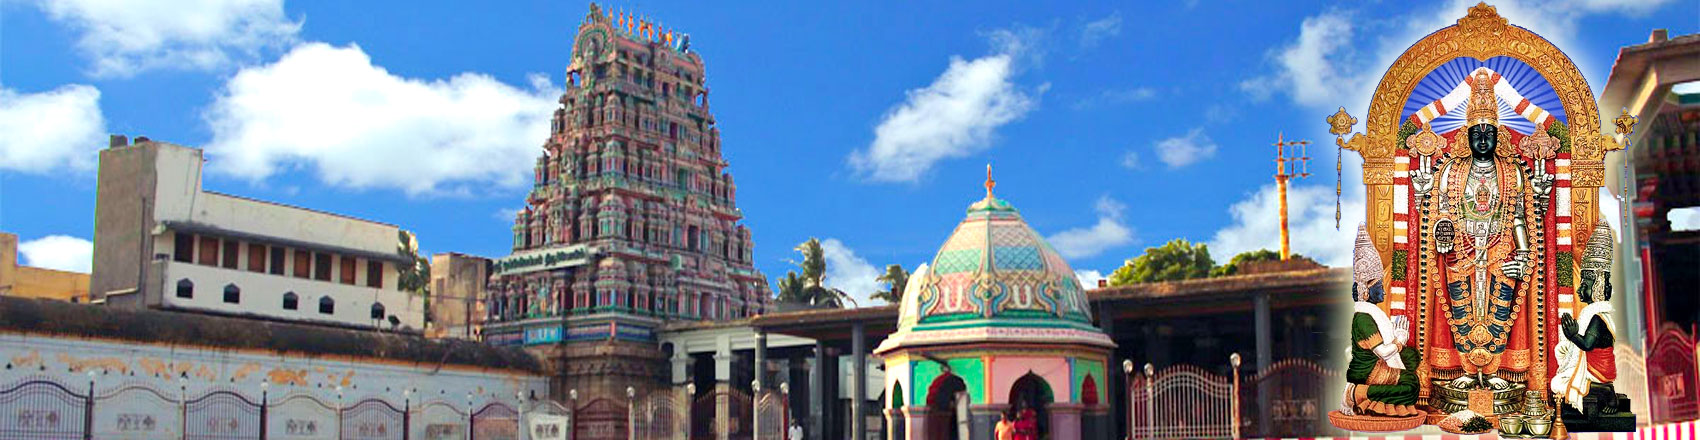 tmpooja-oppiliappan-temple-online-mega-pooja-store